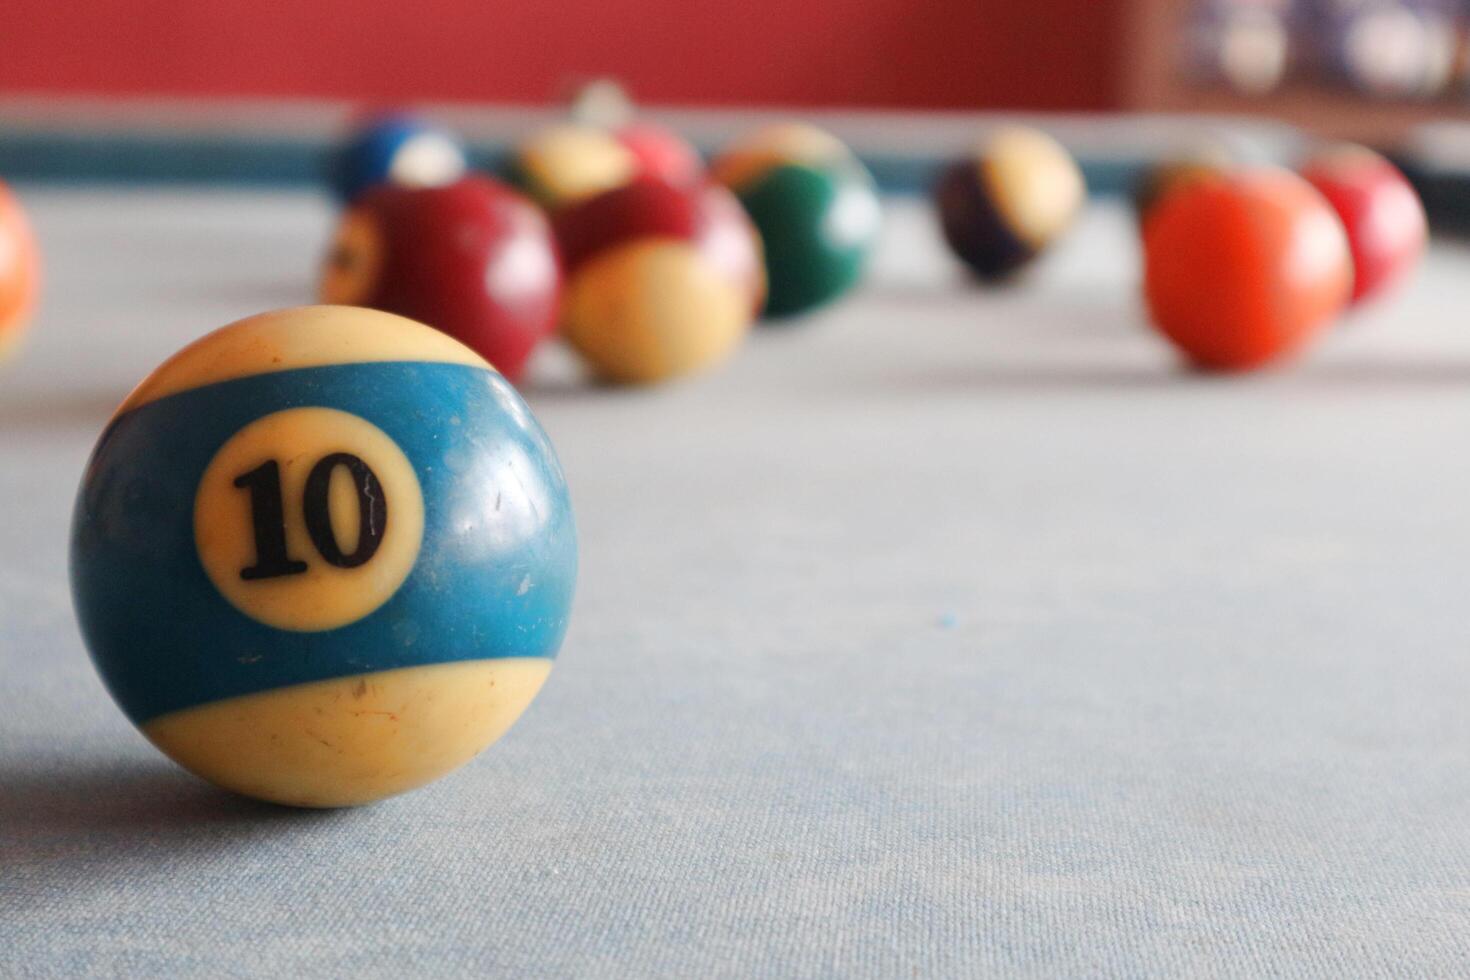 billar Deportes juego. multicolor de billar pelotas con números en el piscina mesa. activo recreación y entretenimiento. foto